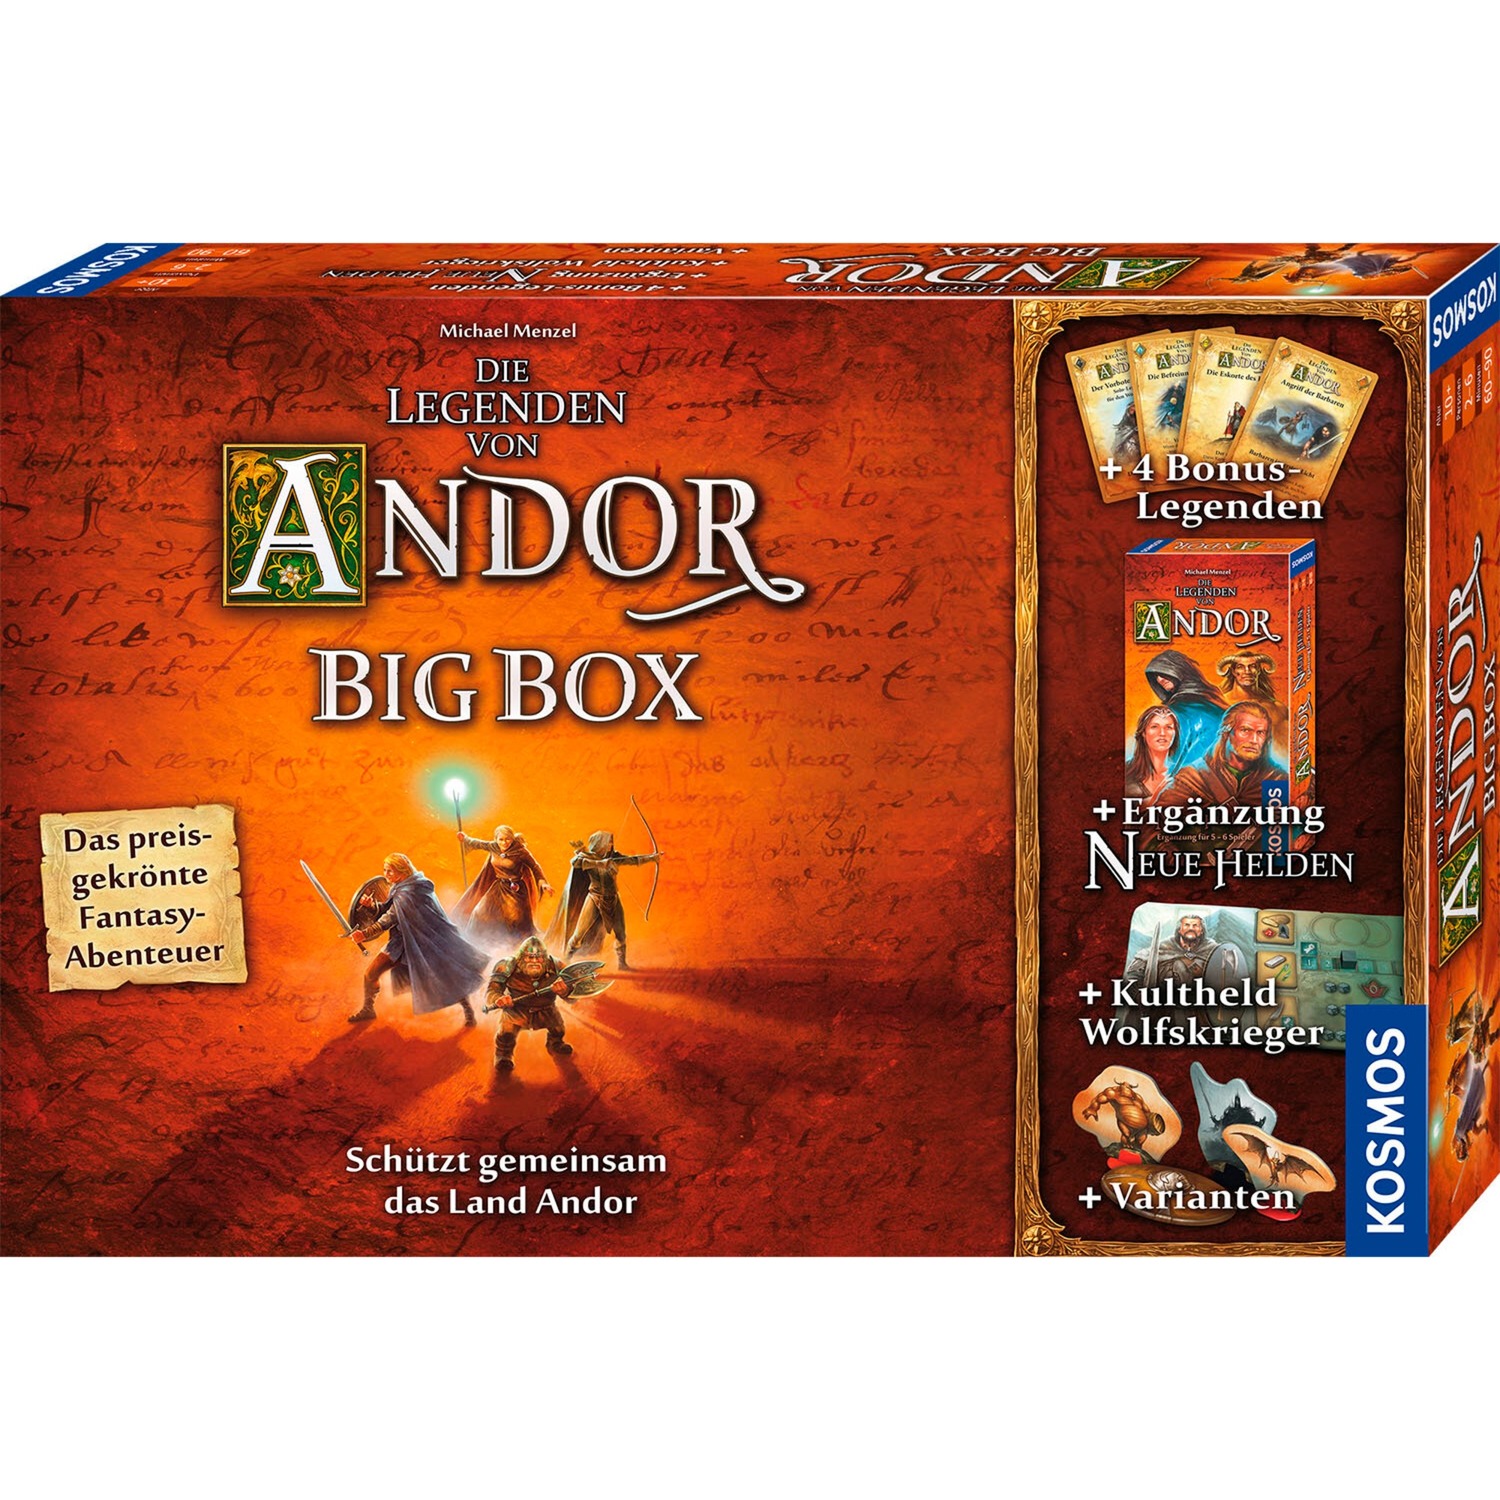 Die Legenden von Andor - Big Box, Brettspiel